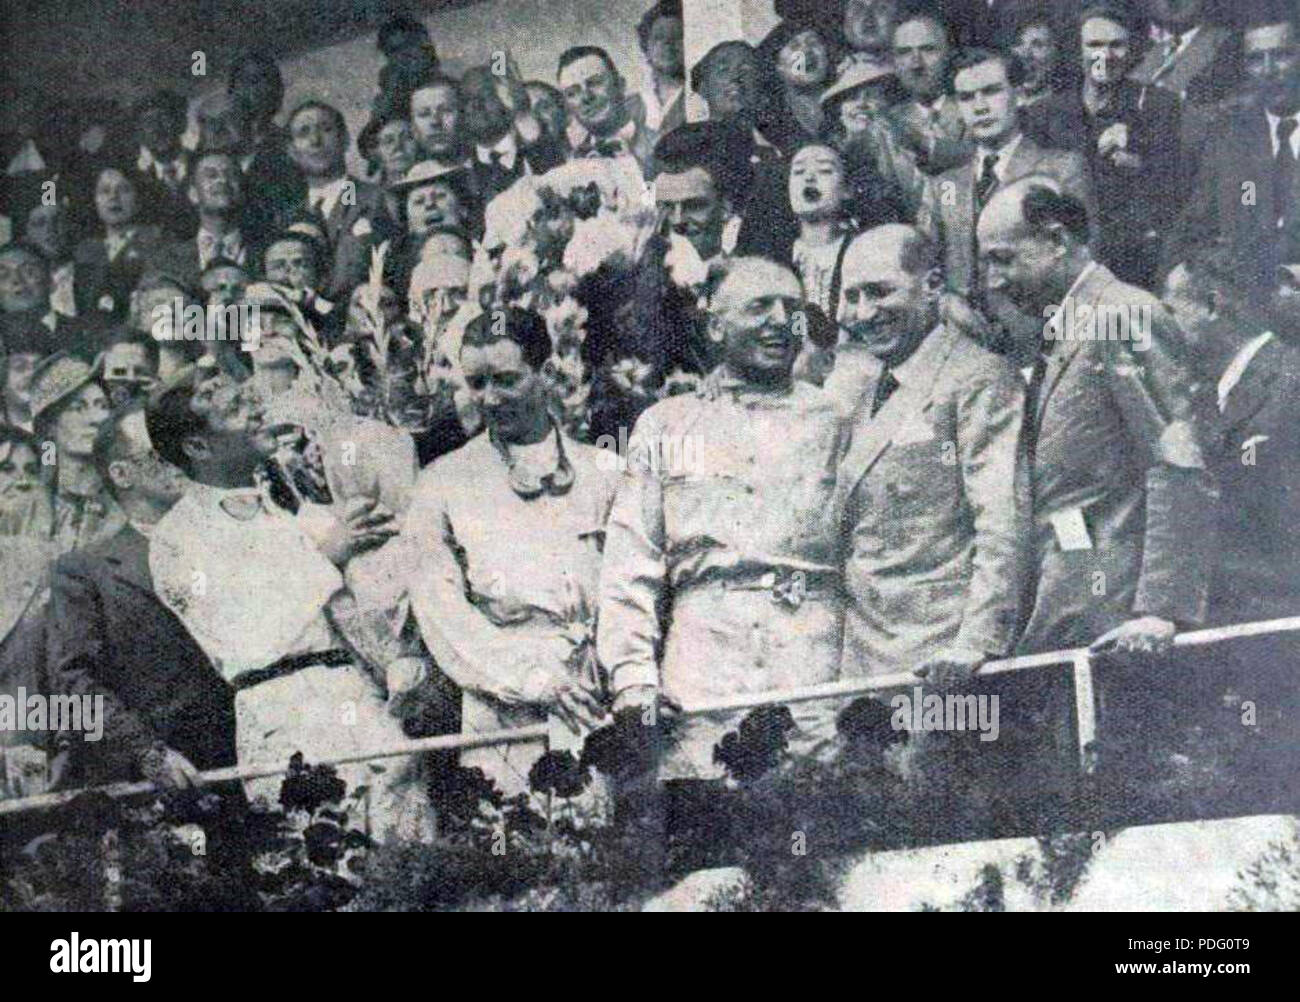 144 Grand Prix de l'ACF 1939, G. à D. Müller, Le Bègue, Étancelin, le ministre de la justice Marchandeau, et le président de l'ACF de Rohan Stock Photo